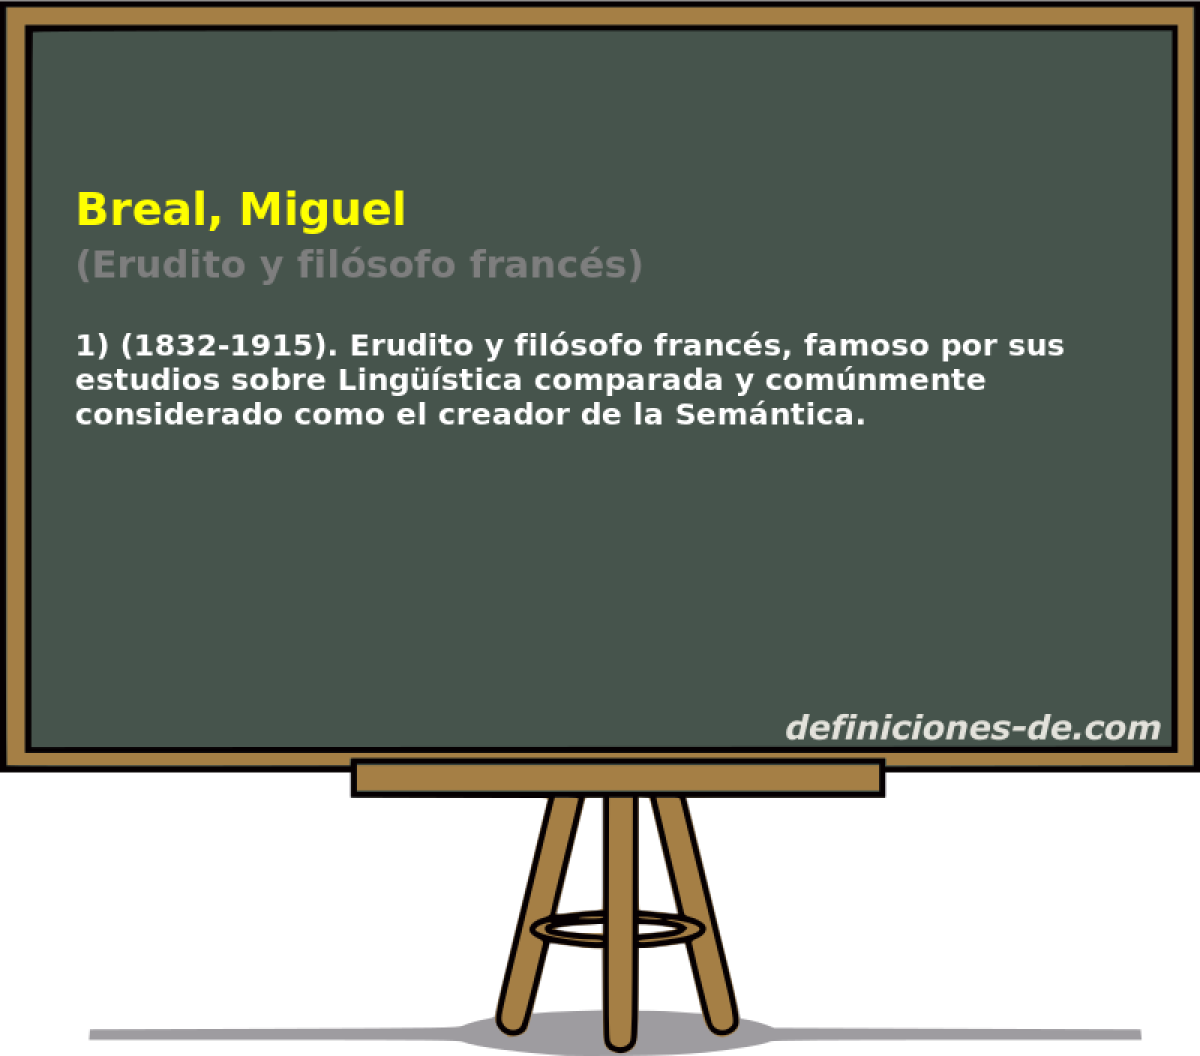 Breal, Miguel (Erudito y filsofo francs)